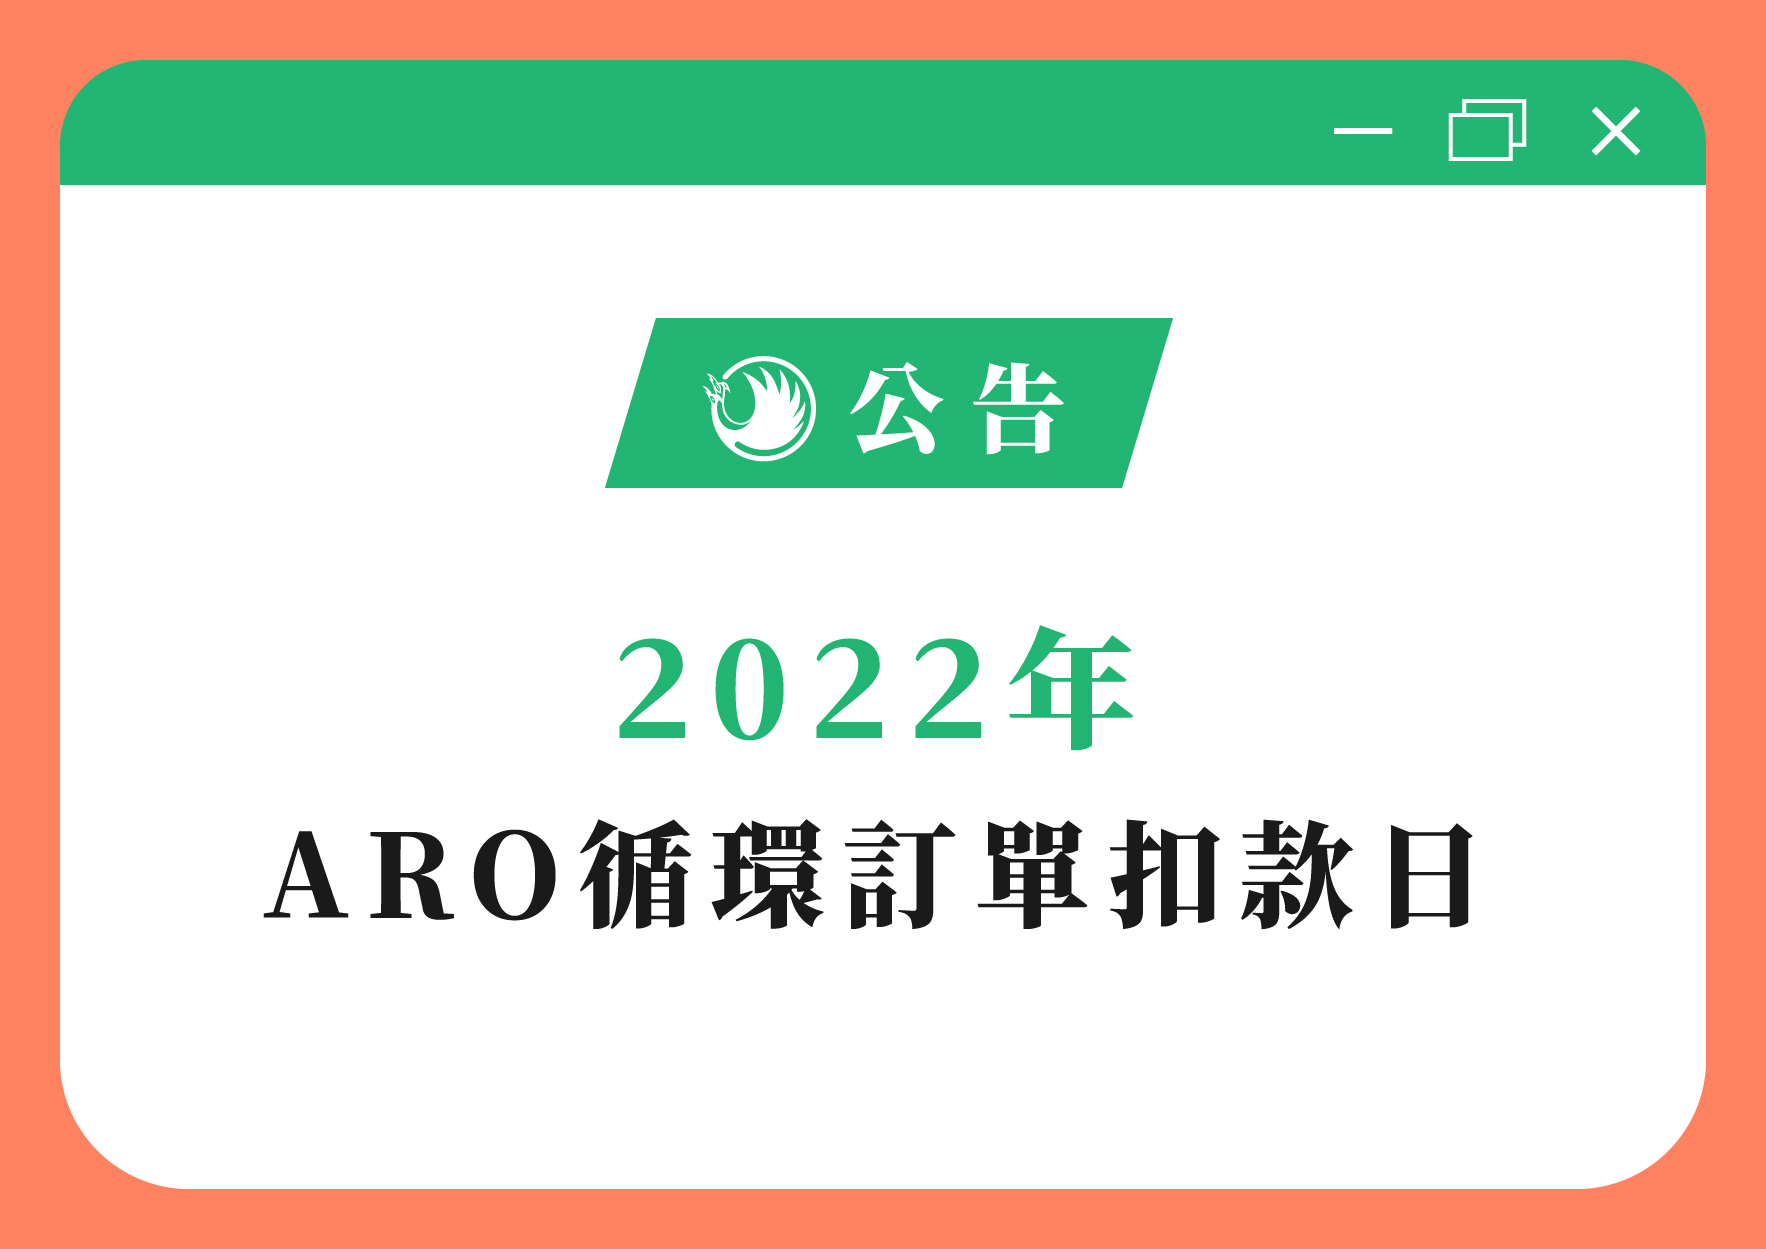 2022年 ARO循環訂單扣款日banner公告-01